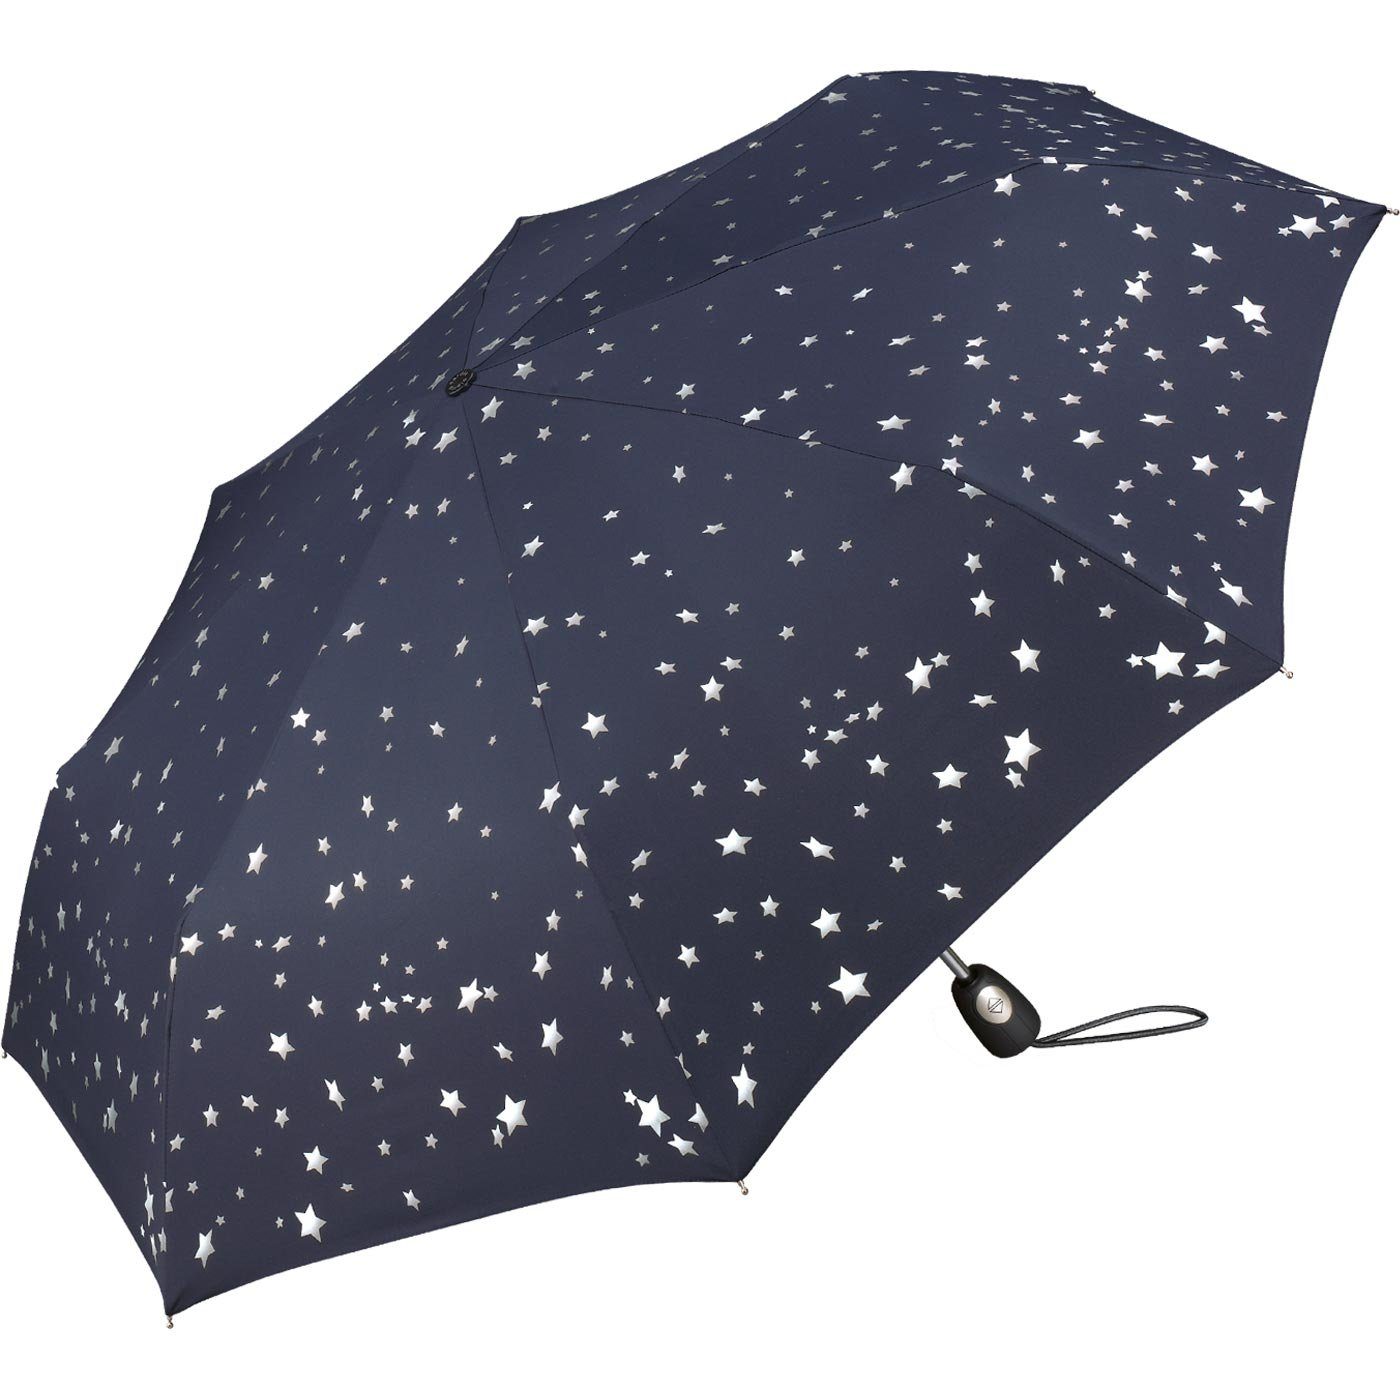 Pierre Cardin Auf-Zu-Automatik, Taschenregenschirm blau-silber Design traumhafte Sterne in verspieltem Damen-Regenschirm schöner mit